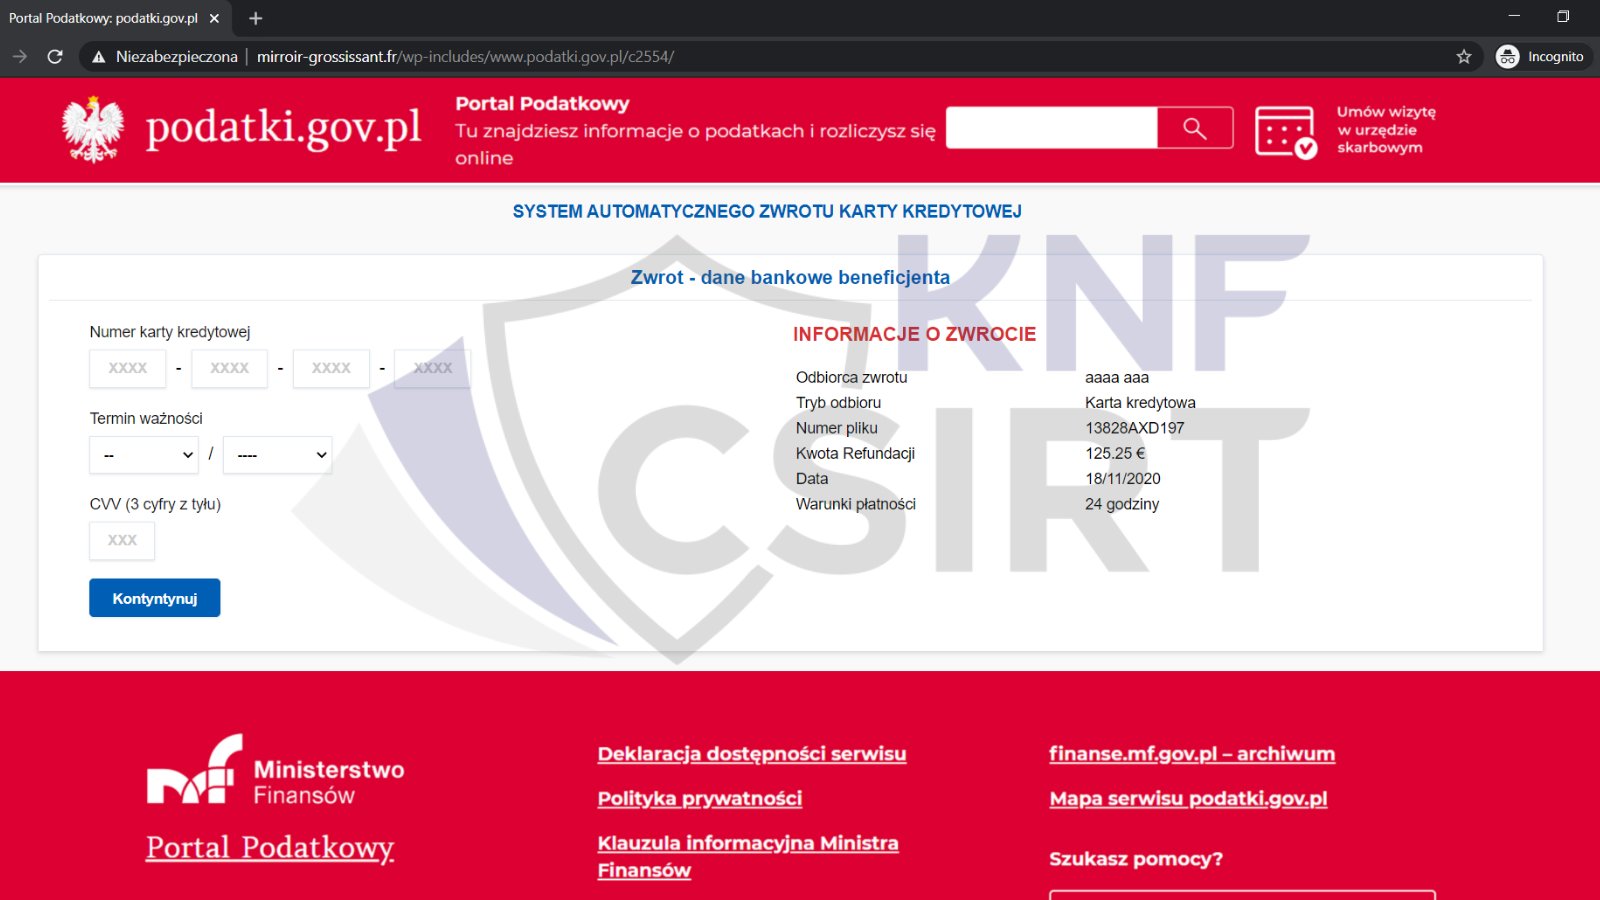 Strona intranetowa przypominająca podatki.gov.pl z formularzem do wypełnienia danymi karty kredytowej.